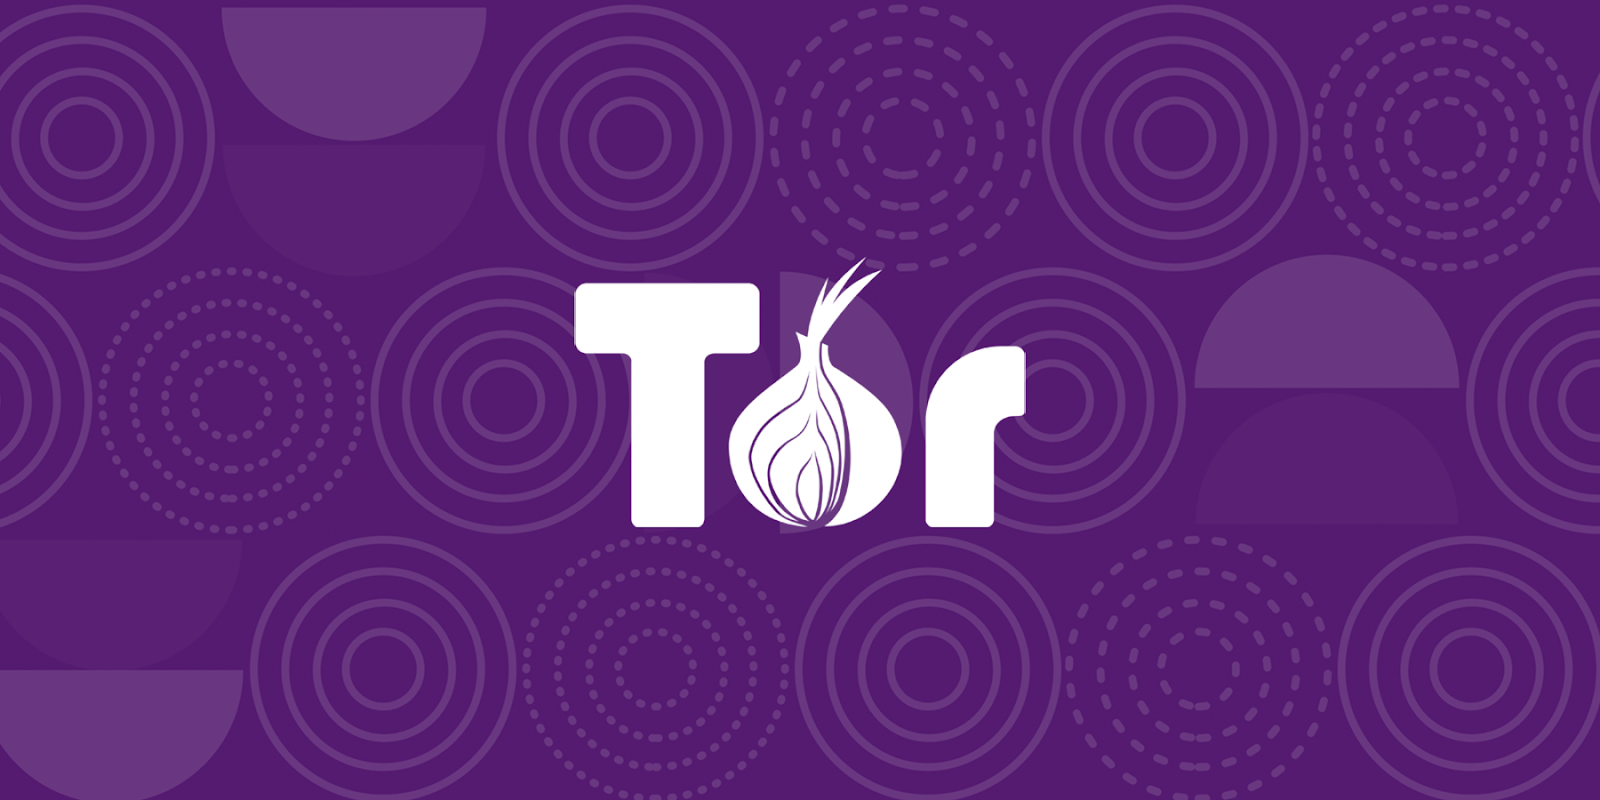 1. Prehliadač Tor